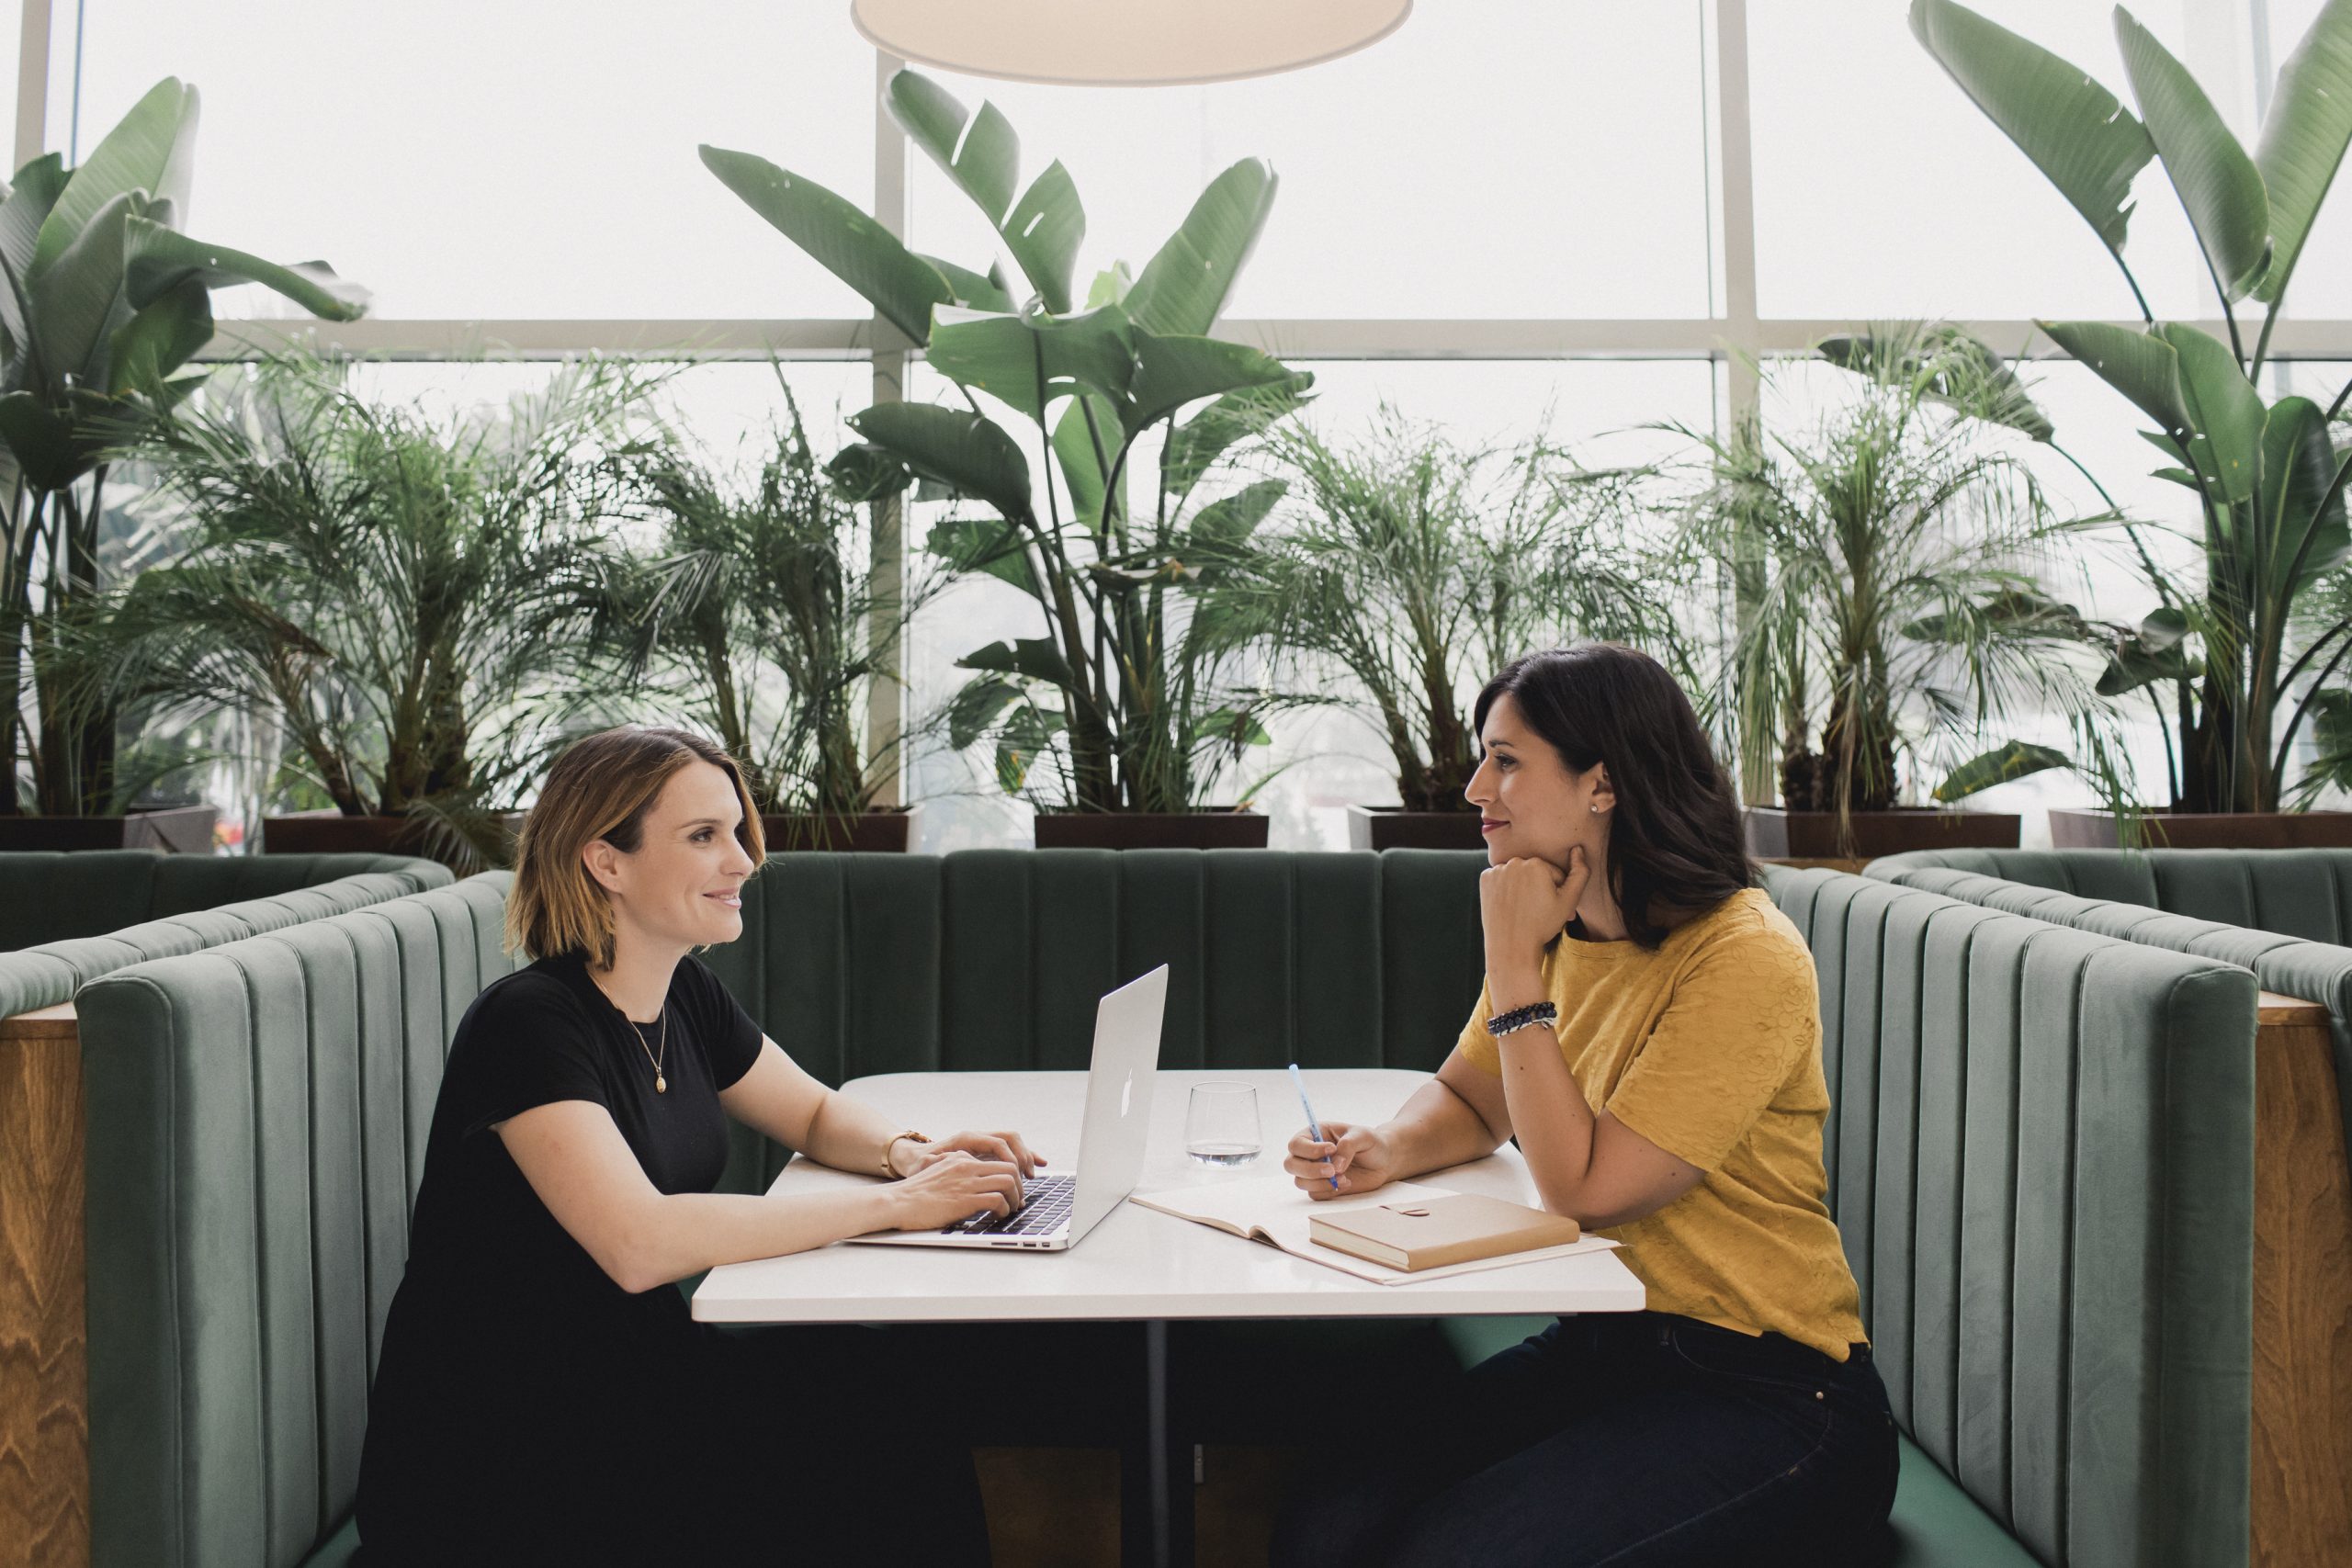 Julie Tremblay Potvin et Marie-Andrée Mackrous, fondatrices de De Saison, deux entrepreneures, sont assises pour travailler au restaurant les Botanistes de Québec